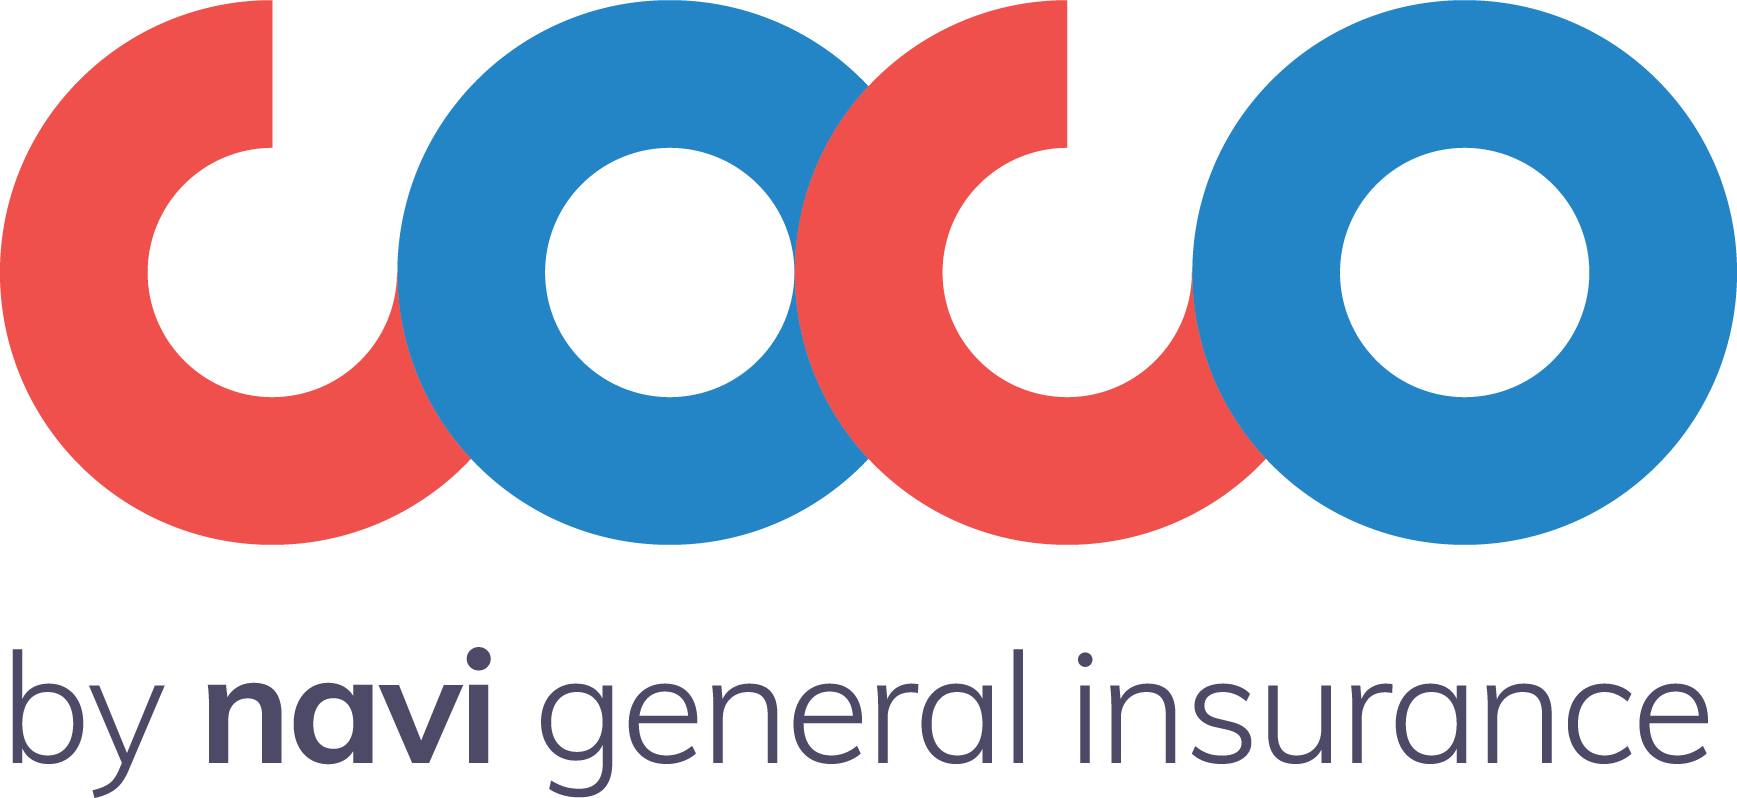 COCO-logo.original